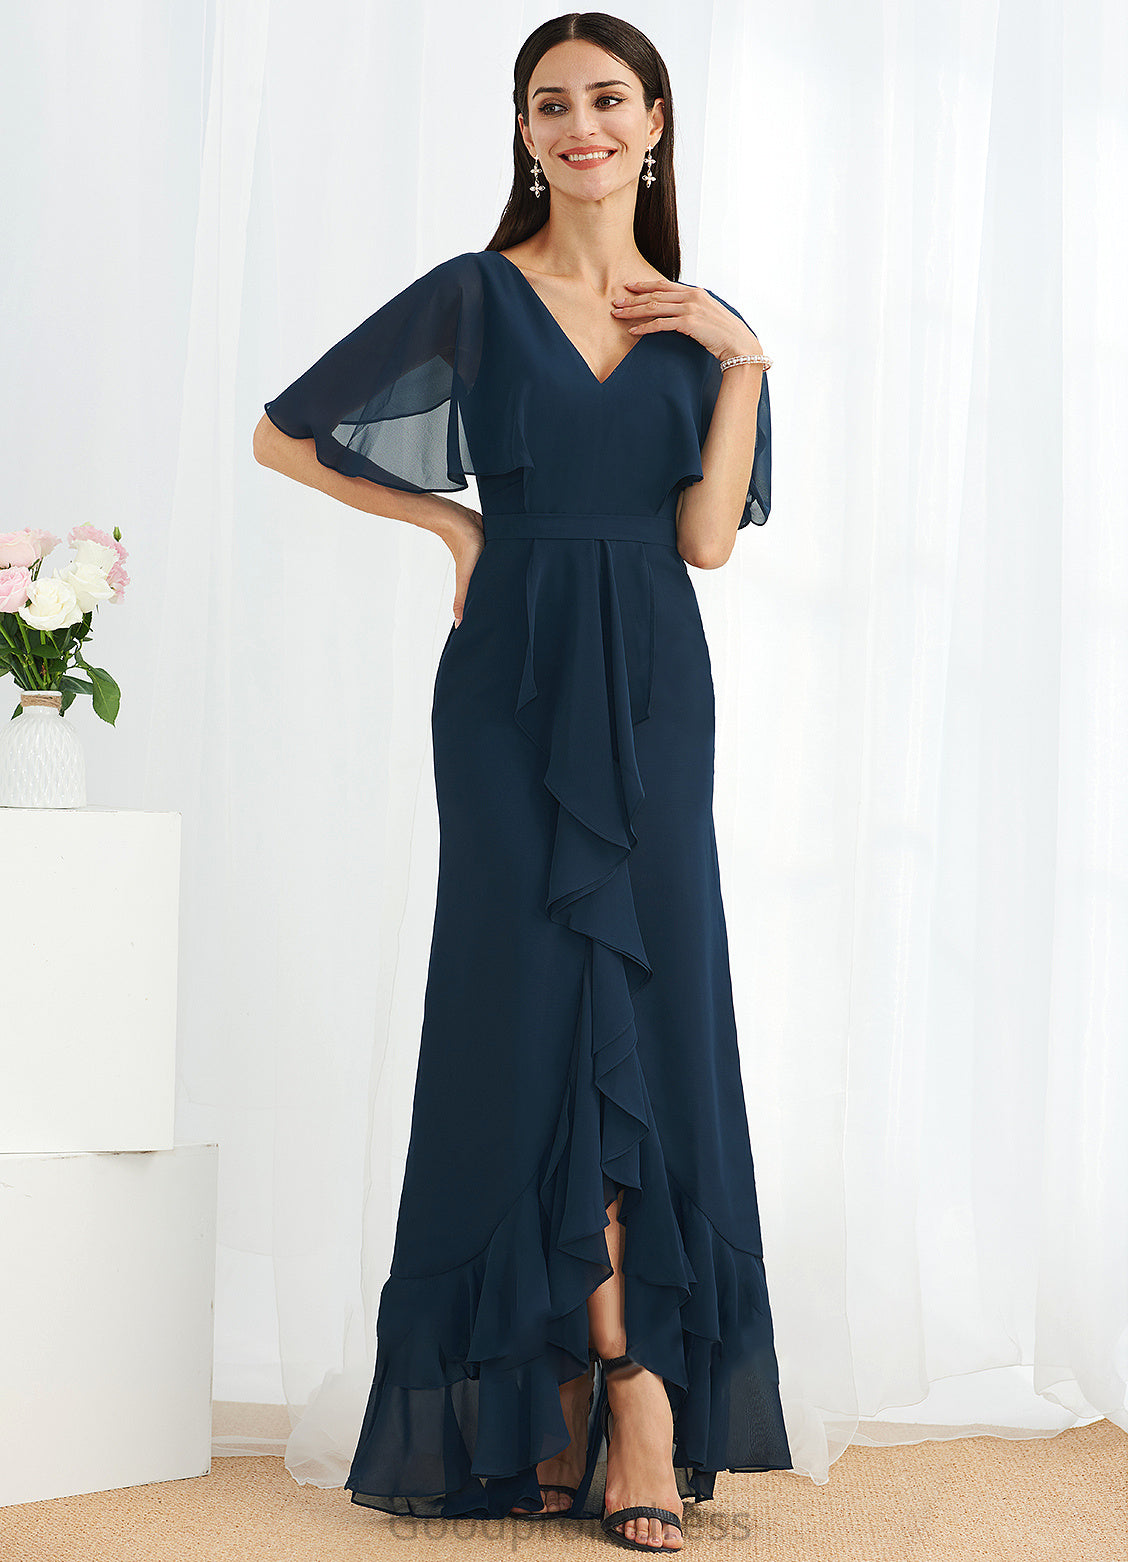 Asymmetrical Neckline Fabric Length Embellishment SplitFront Silhouette A-Line V-neck Margaret High Low A-Line/Princess Bridesmaid Dresses